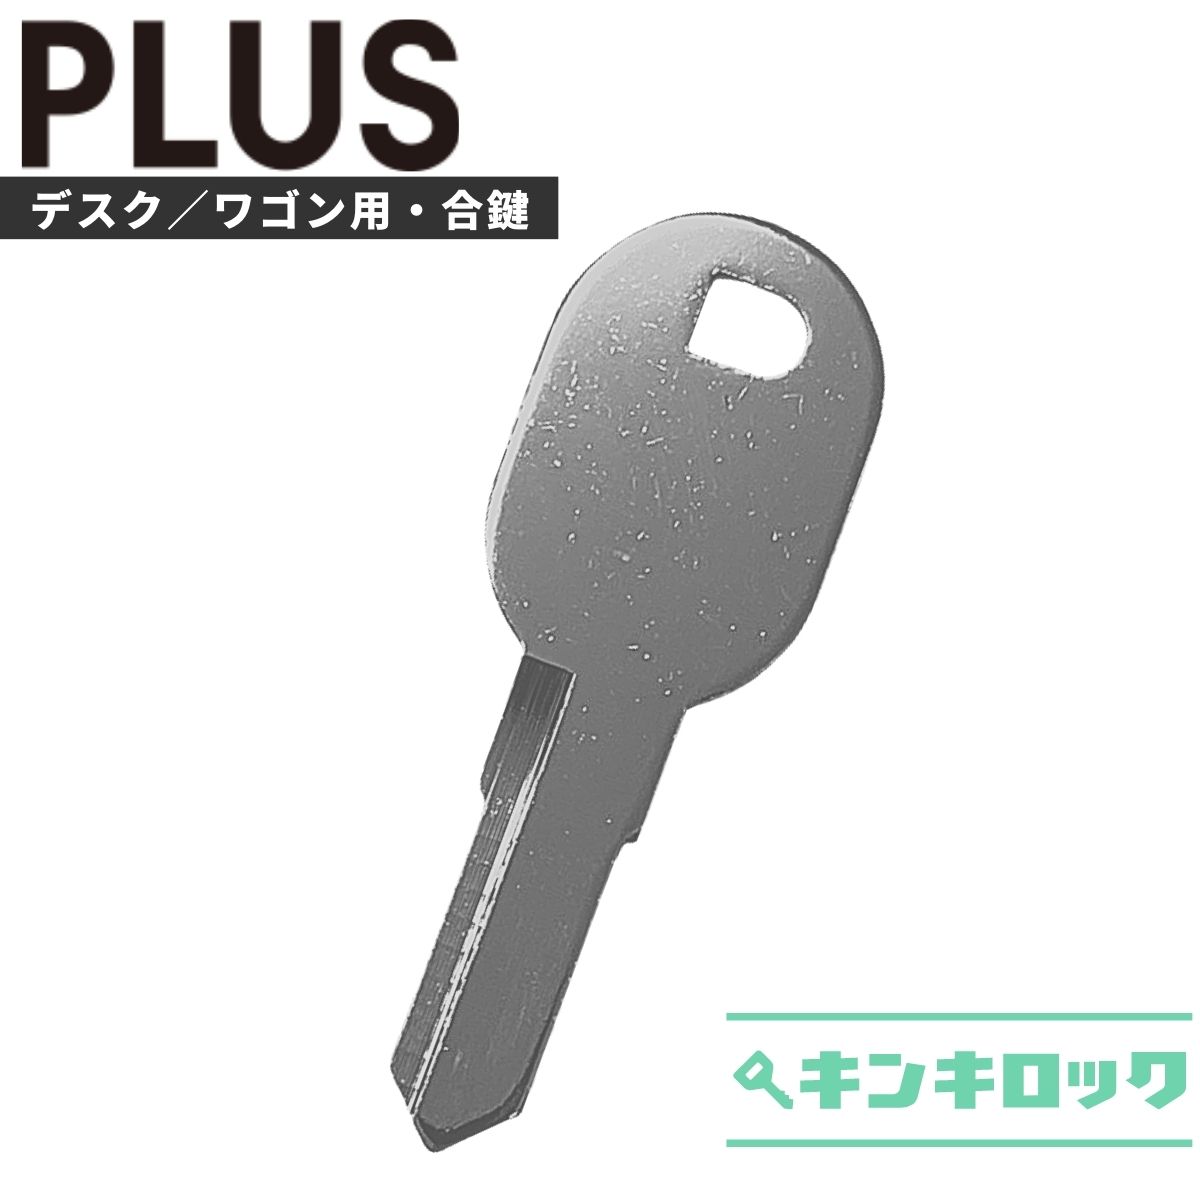 新発売の プラス PLUS 鍵 机 デスク ワゴン 合鍵 合カギ カギ スペアキー L記号